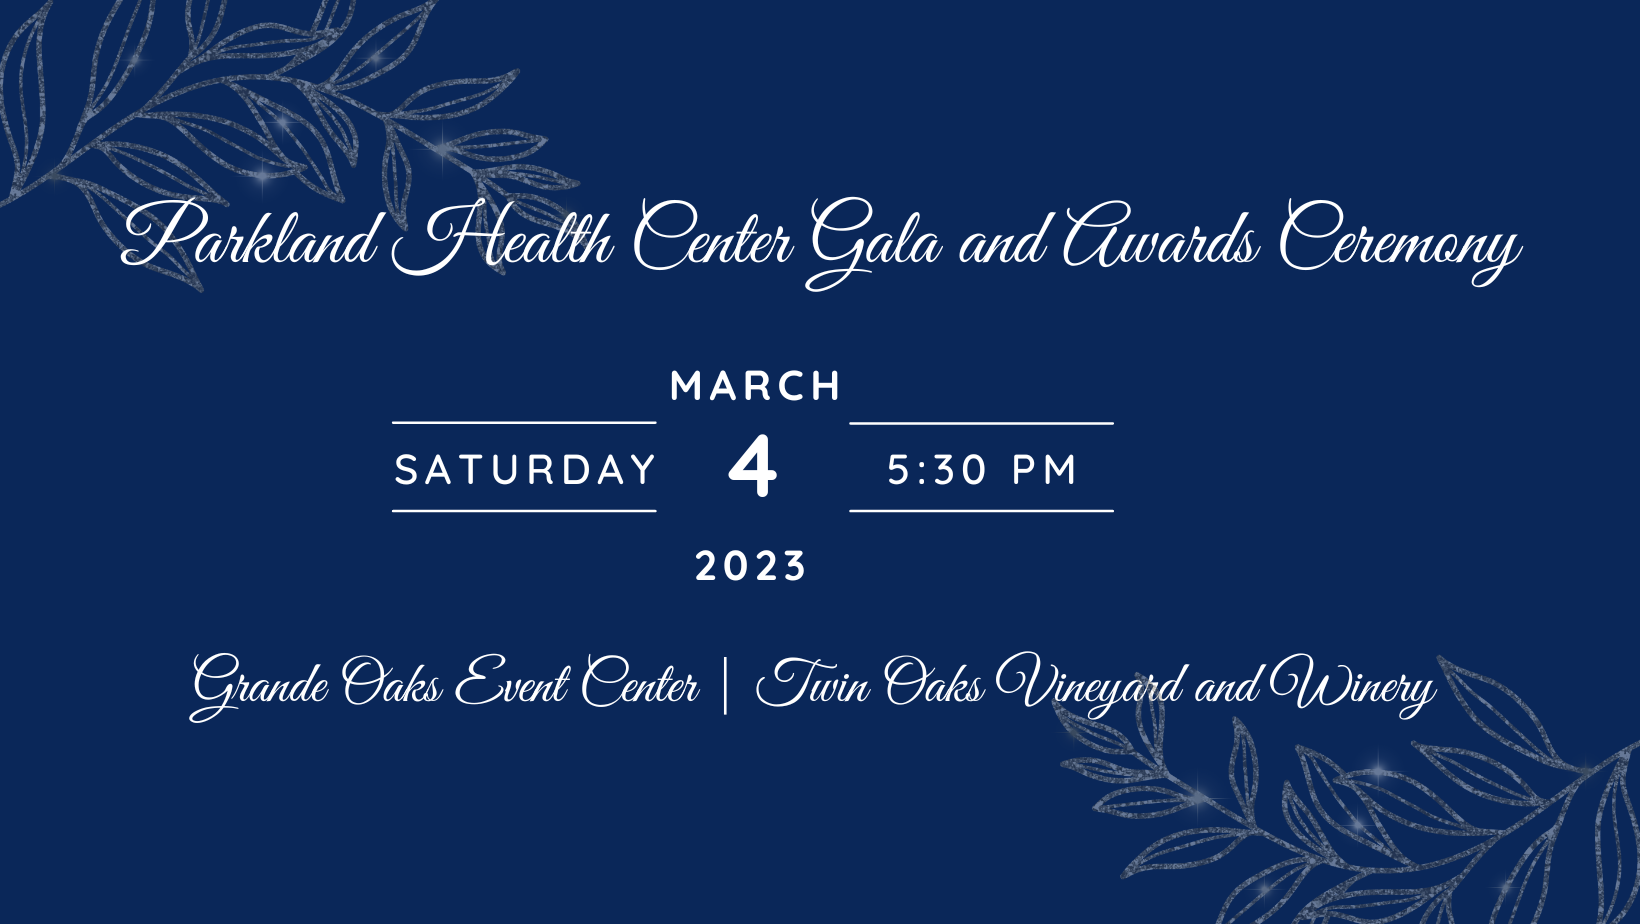 Parkland Health Center Gala and Awards Ceremony - Header Image